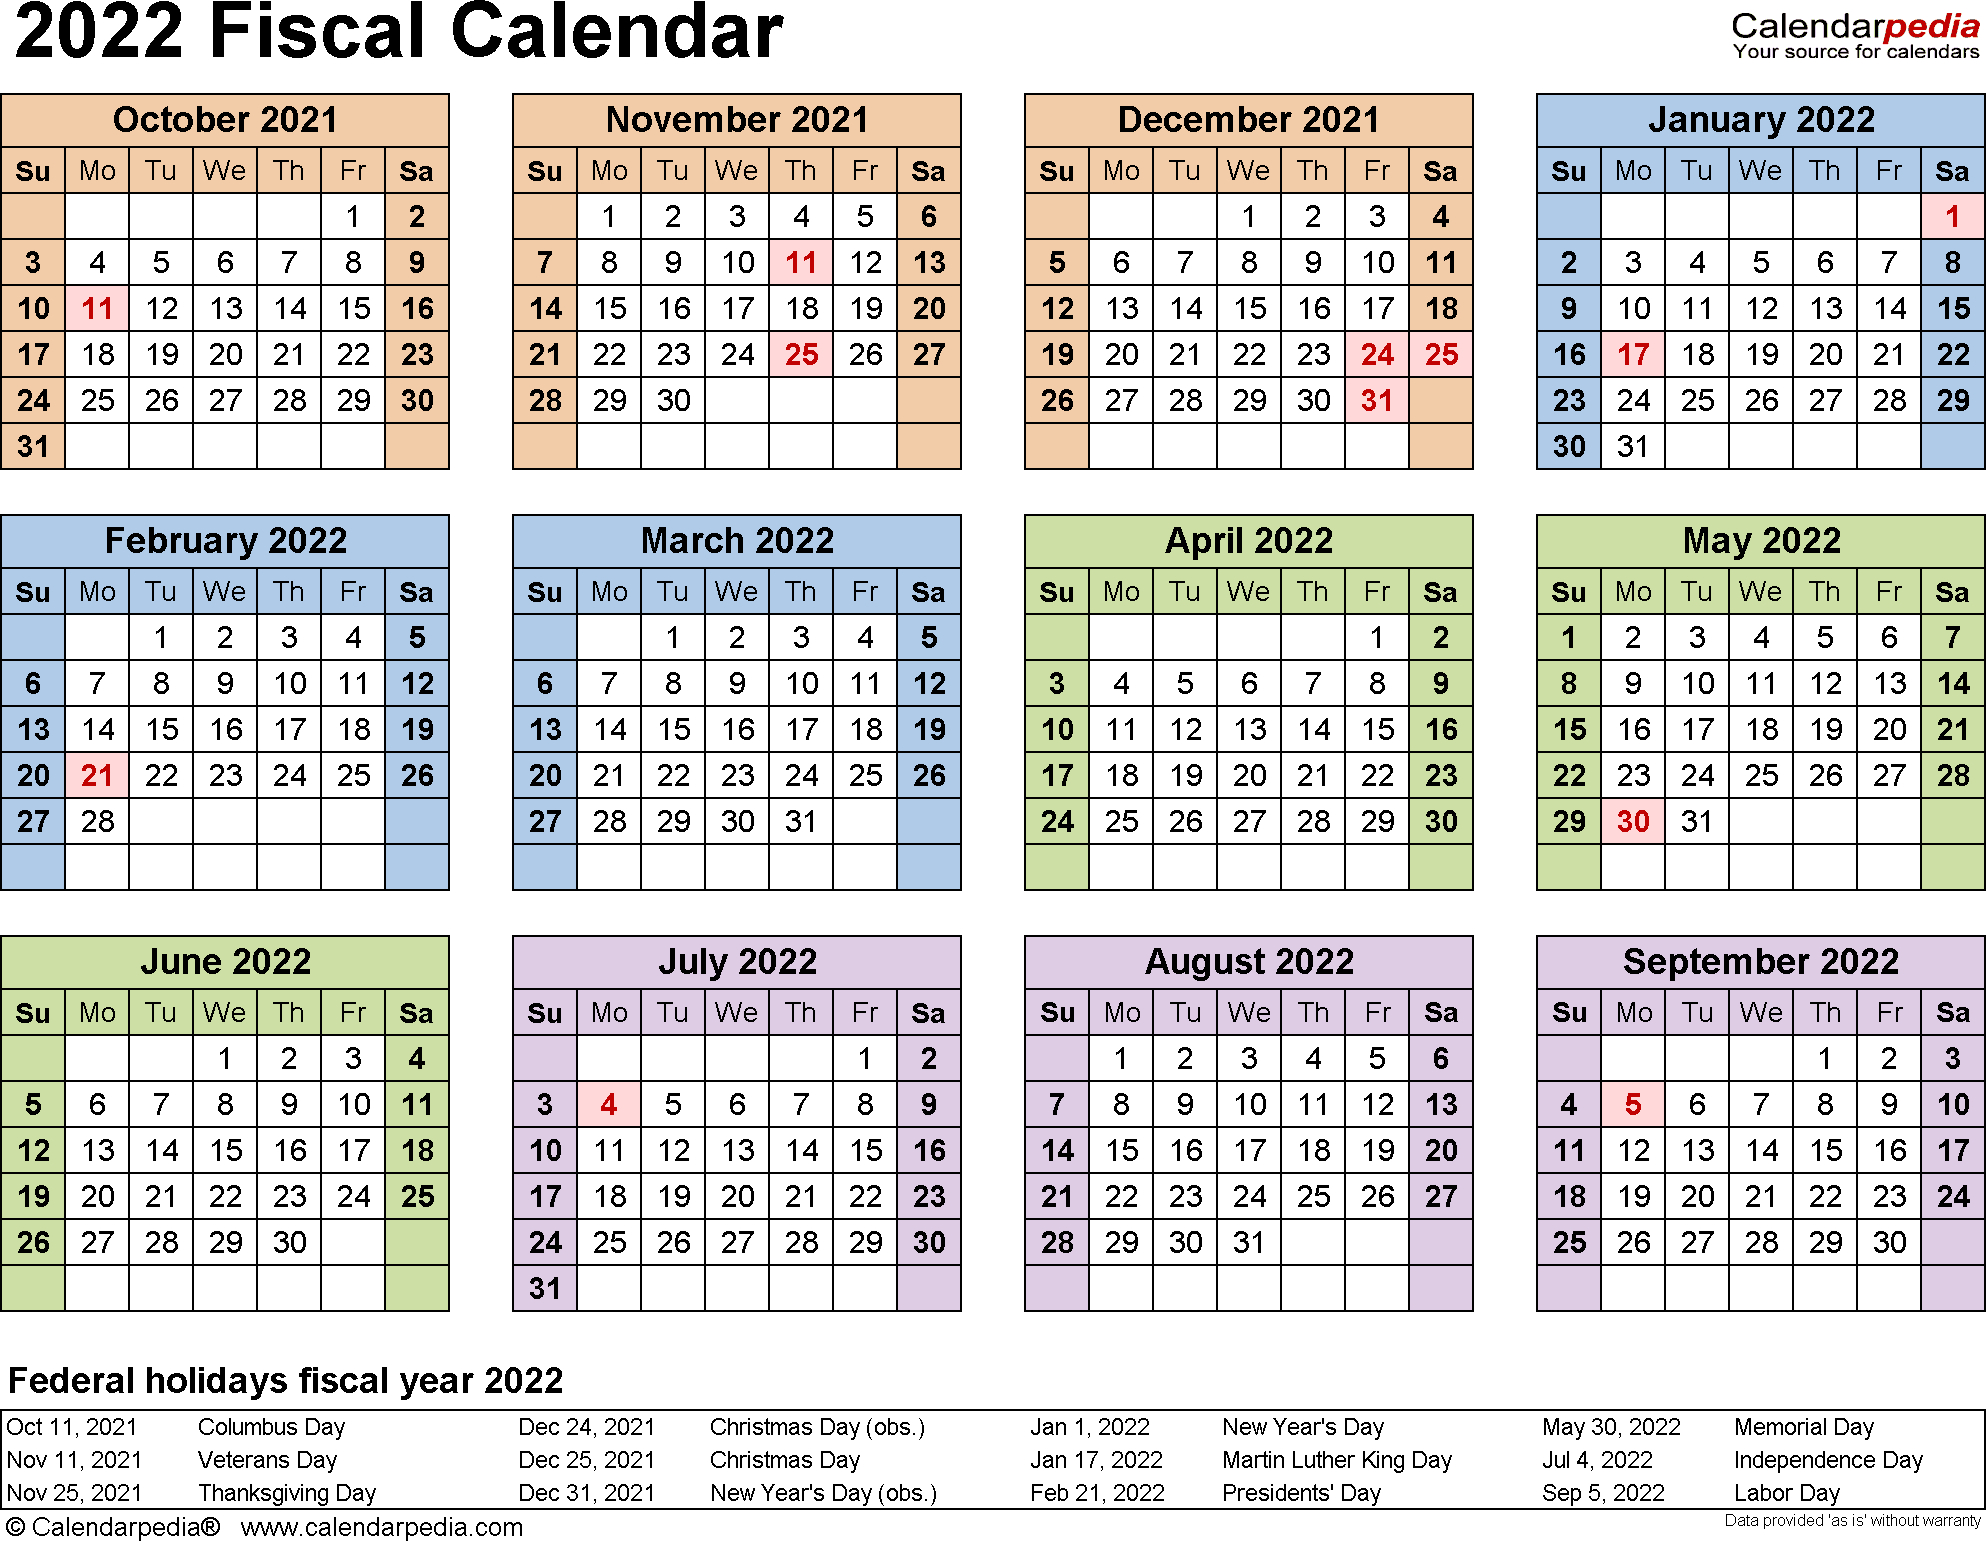 Payroll Calendar 2022 | Payroll Calendar 2021 within Get Free Employee Absentee Calendar 2022 Calendar